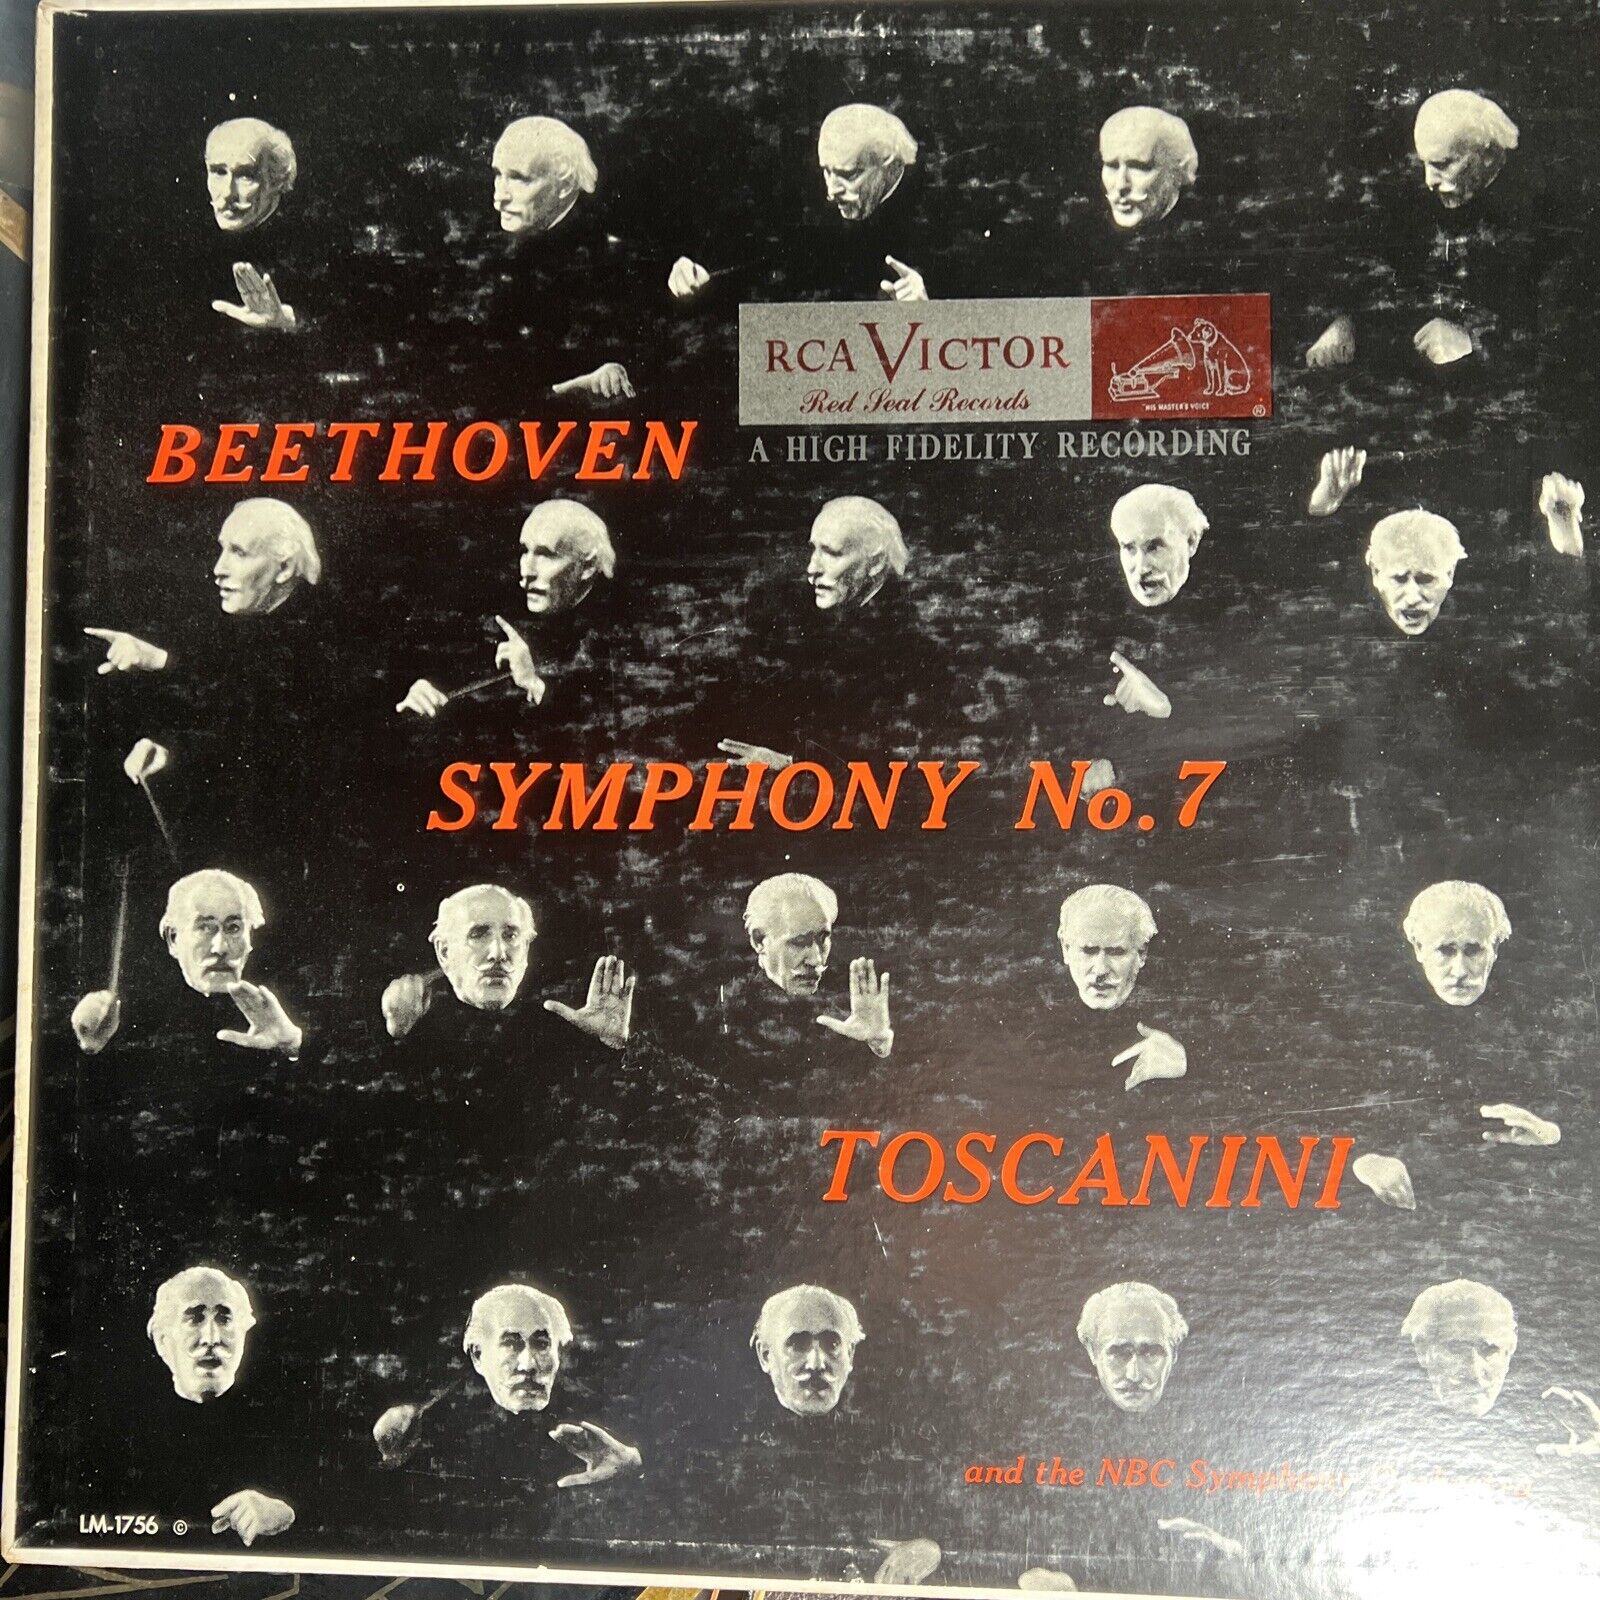 Beethoven Symphony No. 7 Toscanini- RCA LM1756 Vinyl Record FIRST PRESS LP